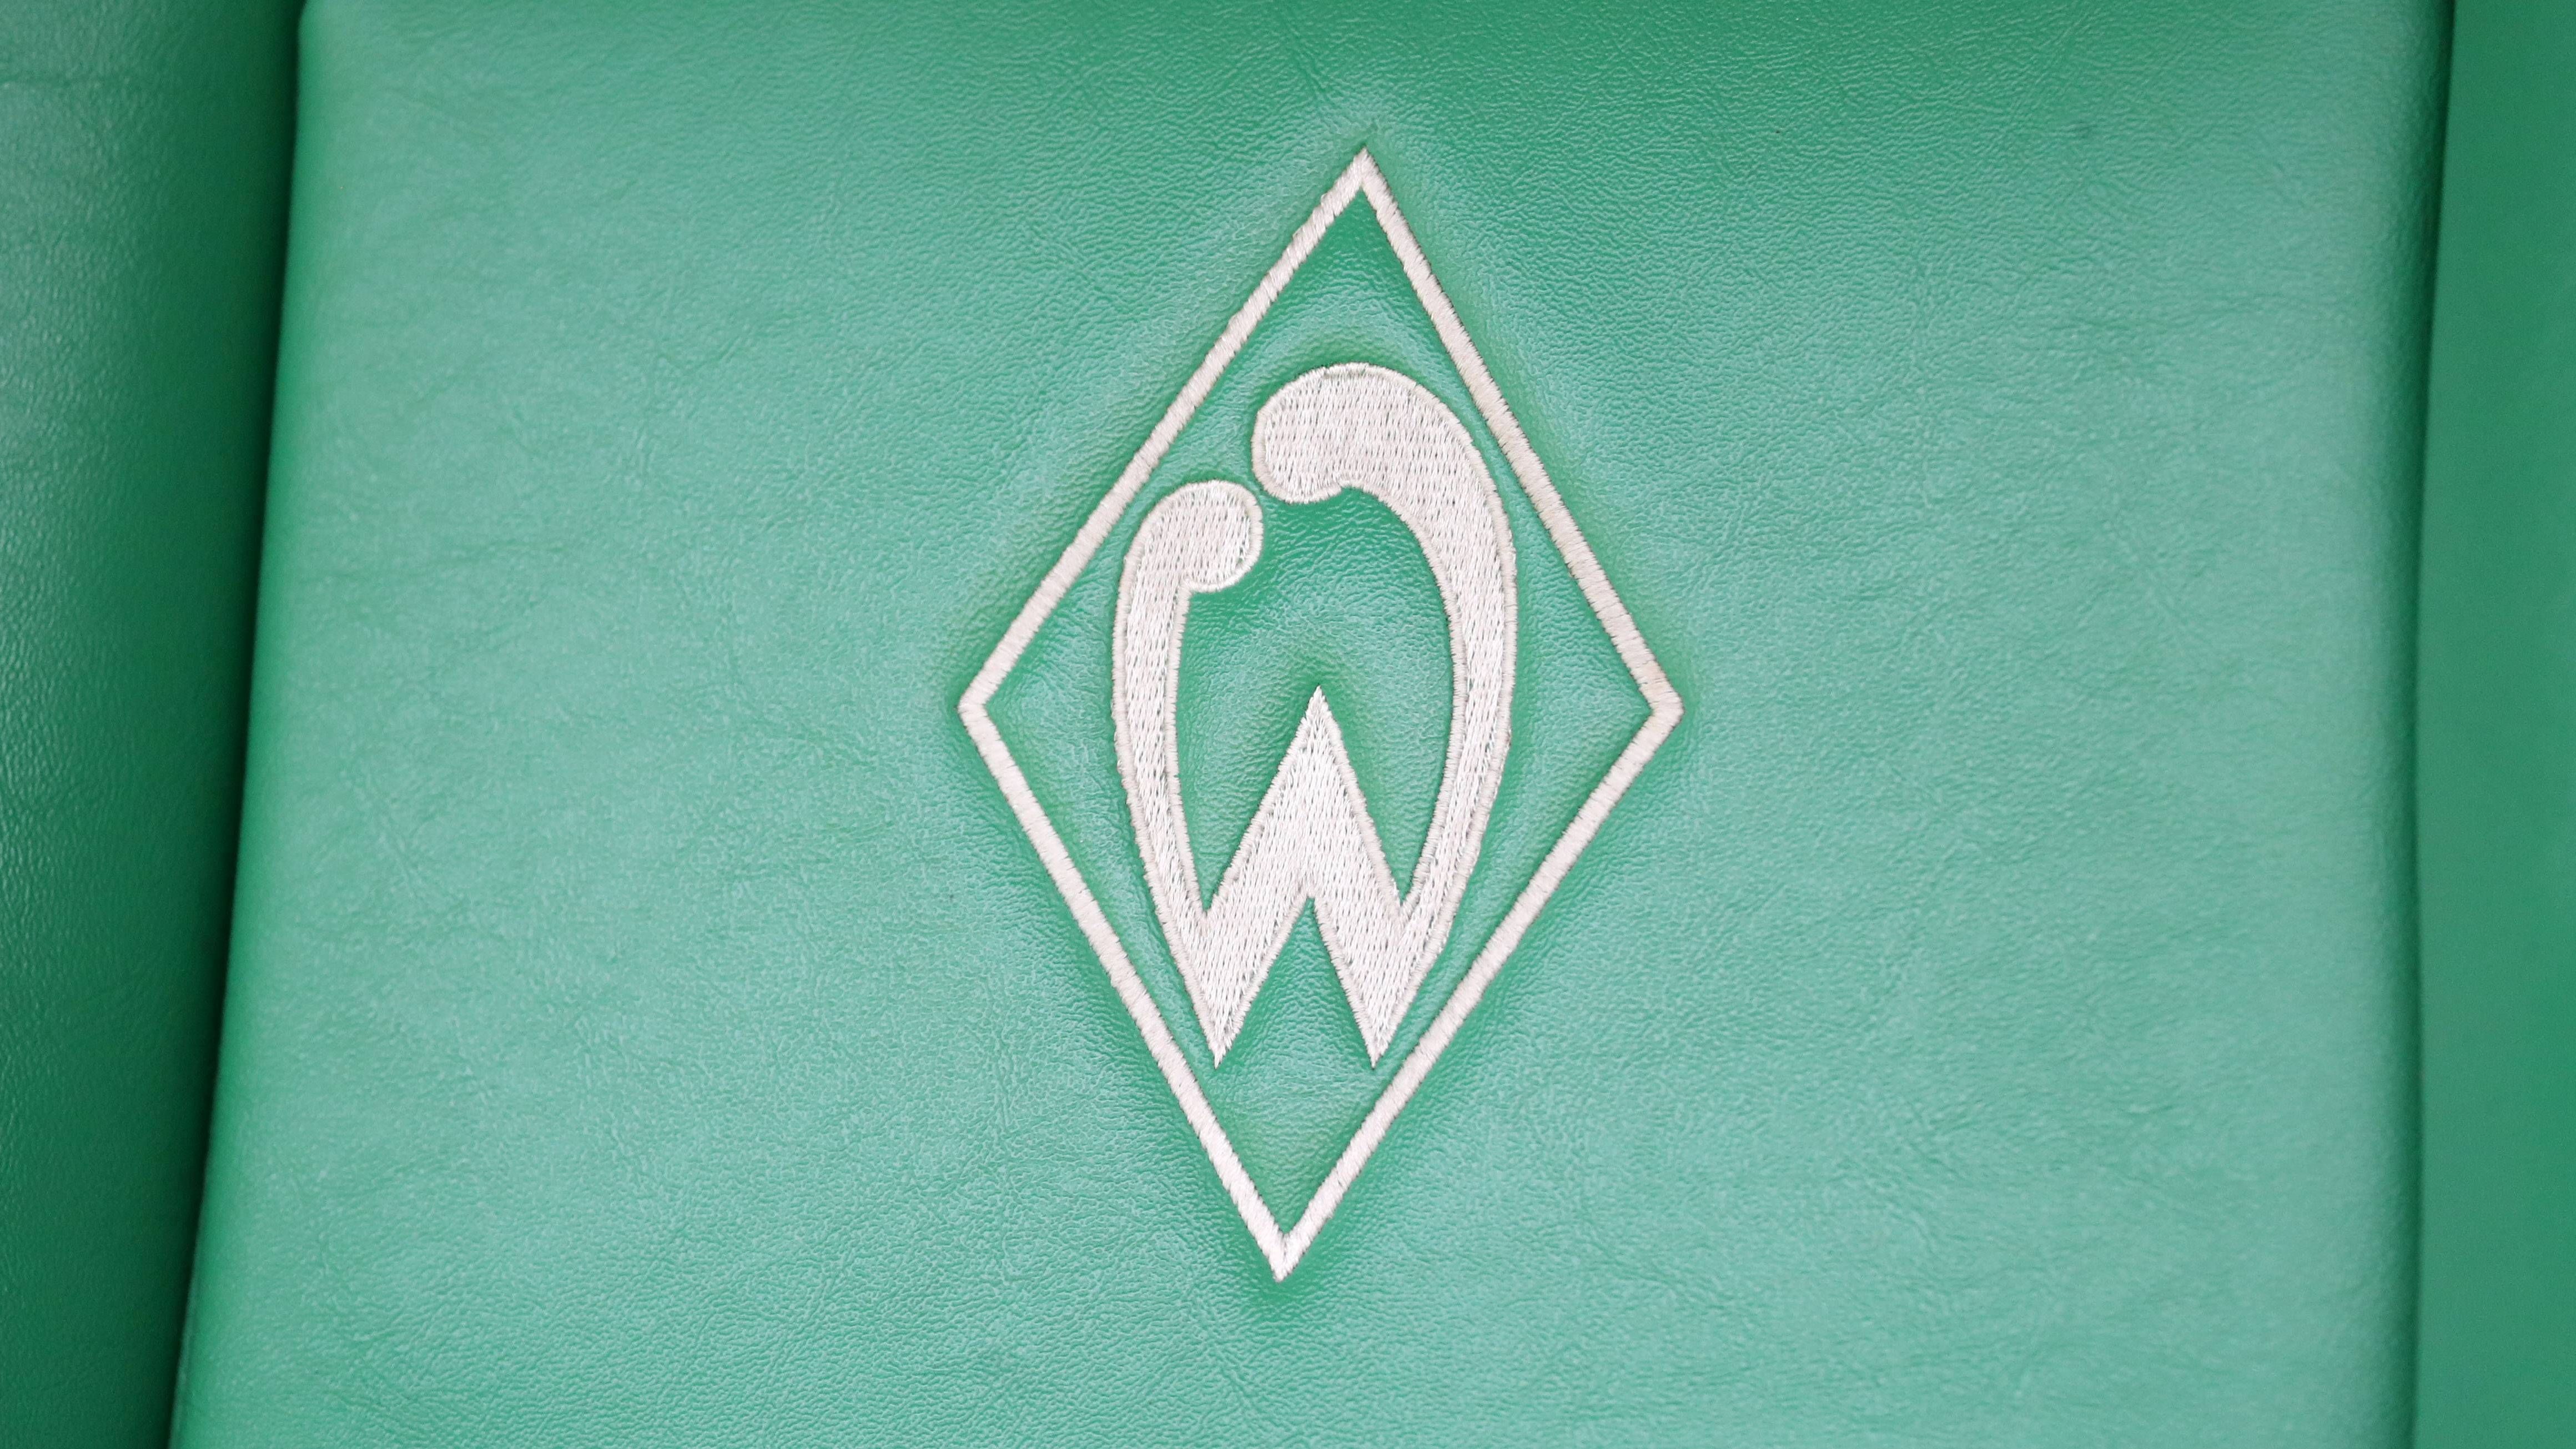 <strong>Platz 4: SV Werder Bremen (4. Februar 1899)</strong><br>Die Geschichte von Werder Bremen nahm ihren Anfang an einer Realschule. Eine kleine Gruppe von Jugendlichen begann Fußball zu spielen. Im Februar 1899 beschloss diese Gruppe einen Verein zu gründen. Der Namensgeber war der Ort, an dem sie spielten: die Veranda des "Kuhhirten". Fortan nannte sich der Verein "Fußball-Verein 'Werder' Bremen von 1899“.<br><br><strong>Saisons in der Bundesliga: 58</strong>